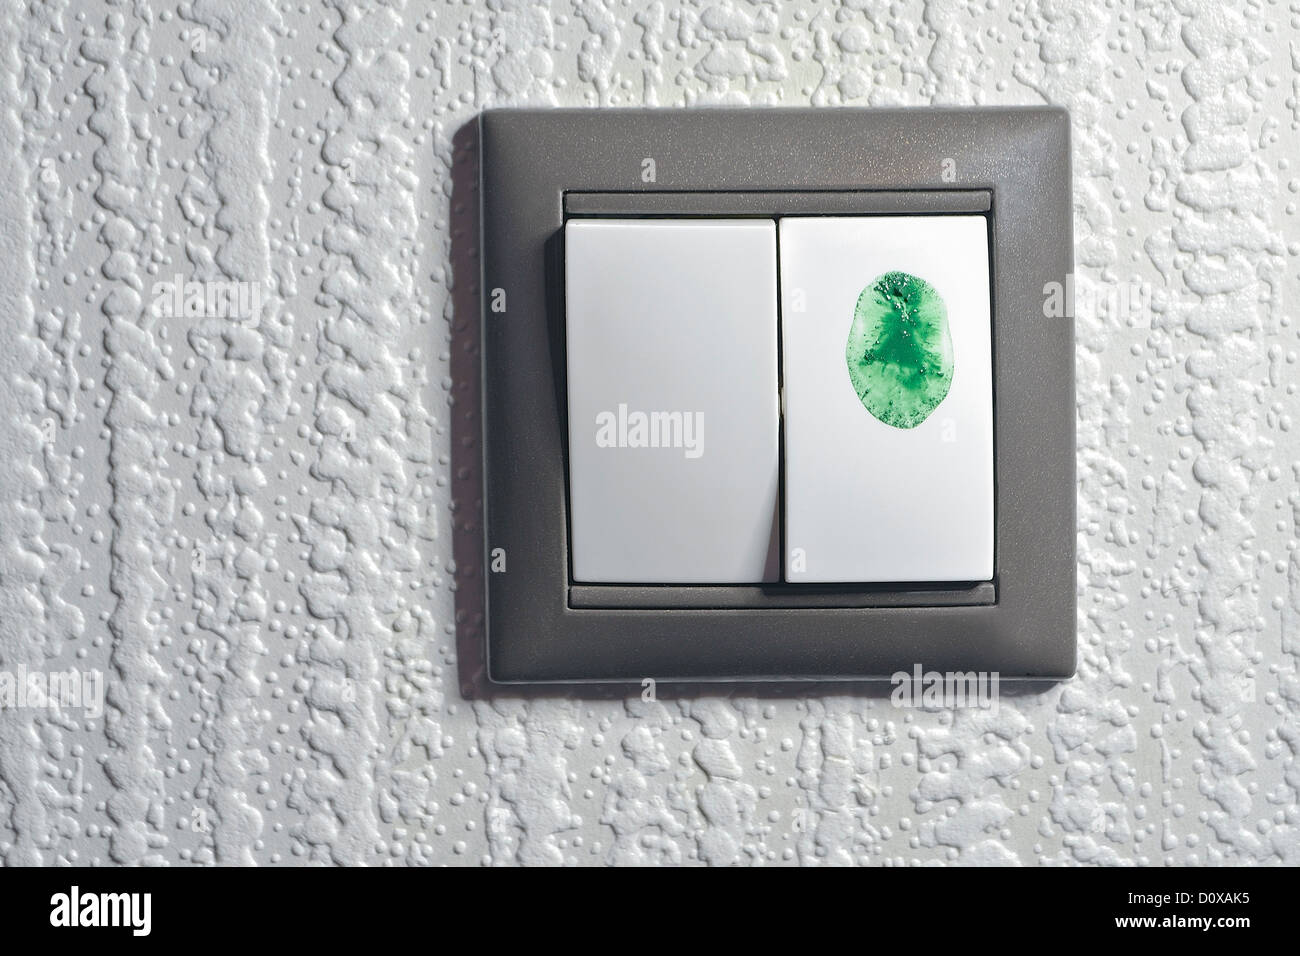 zwei Schlüssel Lichtschalter, man ist berührt von Grünfärbung Fingerspitze "grüne" Ökostrom wechseln Stockfoto